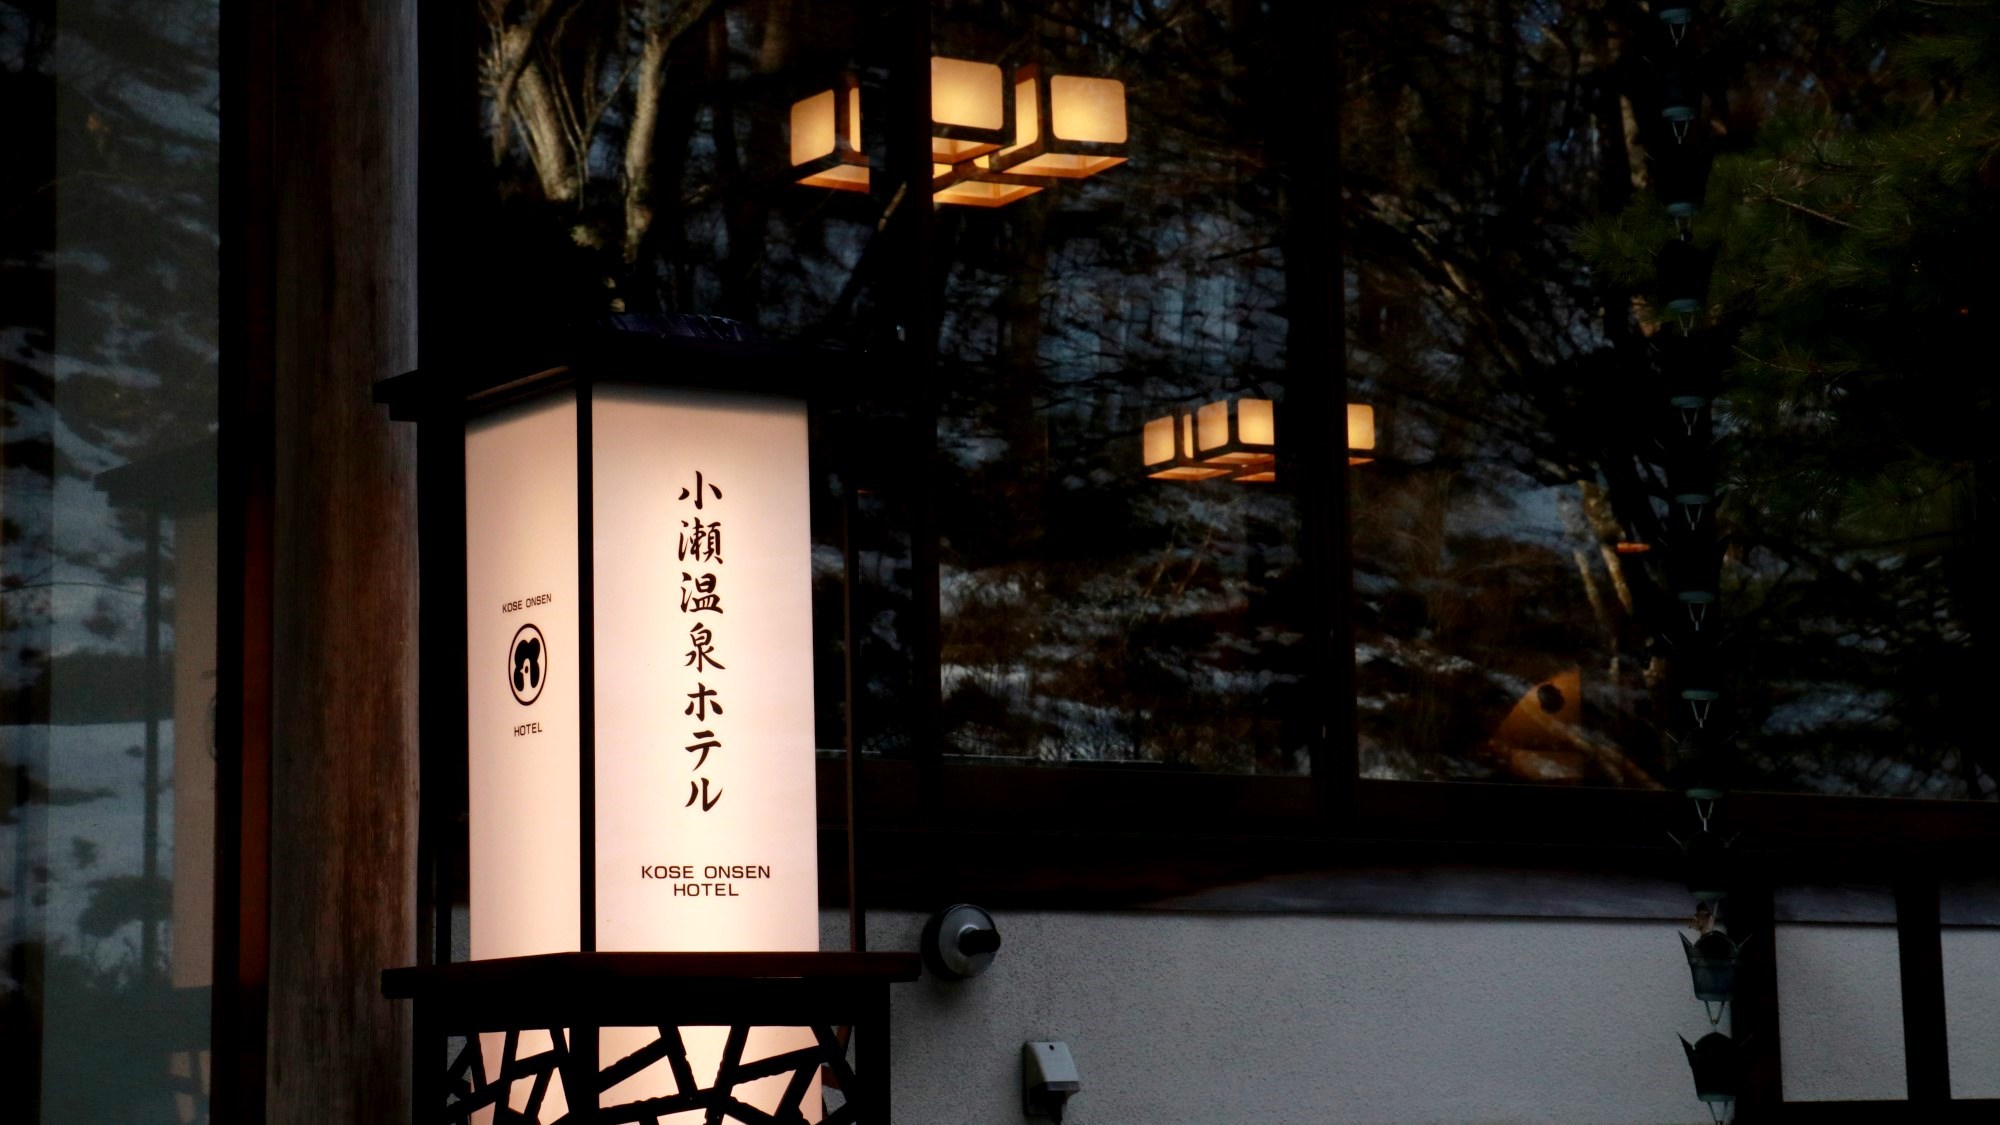 軽井沢の老舗一軒宿「小瀬温泉ホテル」へお越しください